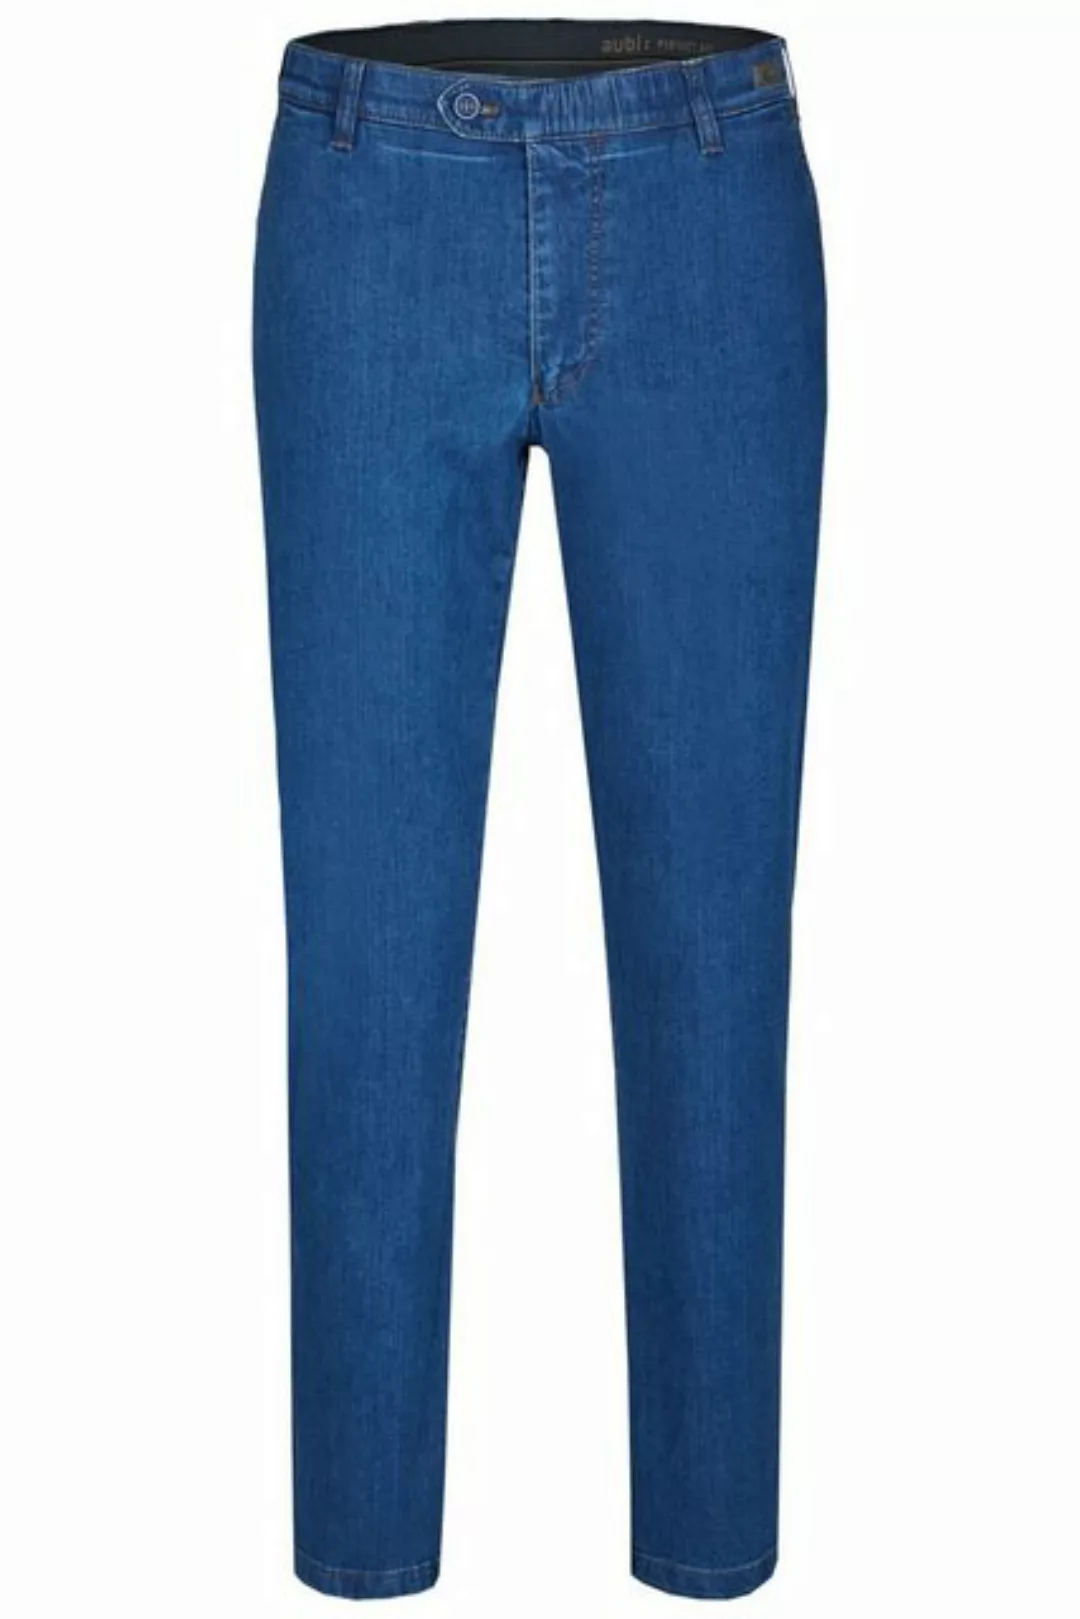 aubi: Bequeme Jeans aubi Perfect Fit Herren Ganzjahres Jeans Hose Stretch a günstig online kaufen